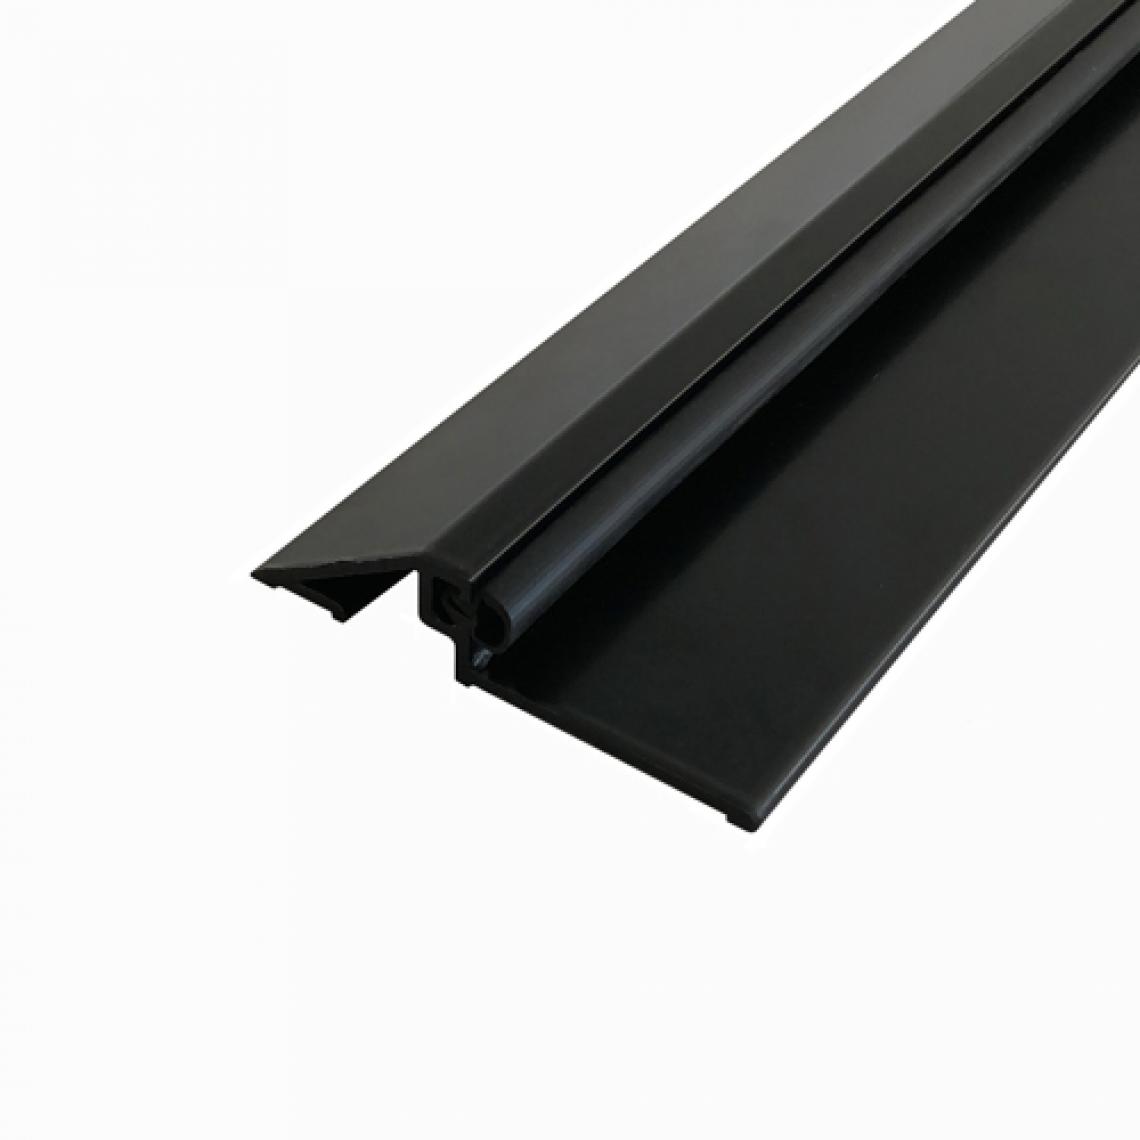 Homewell - Seuil de porte en aluminium avec joint, laqué noir, 1m - Barre de seuil